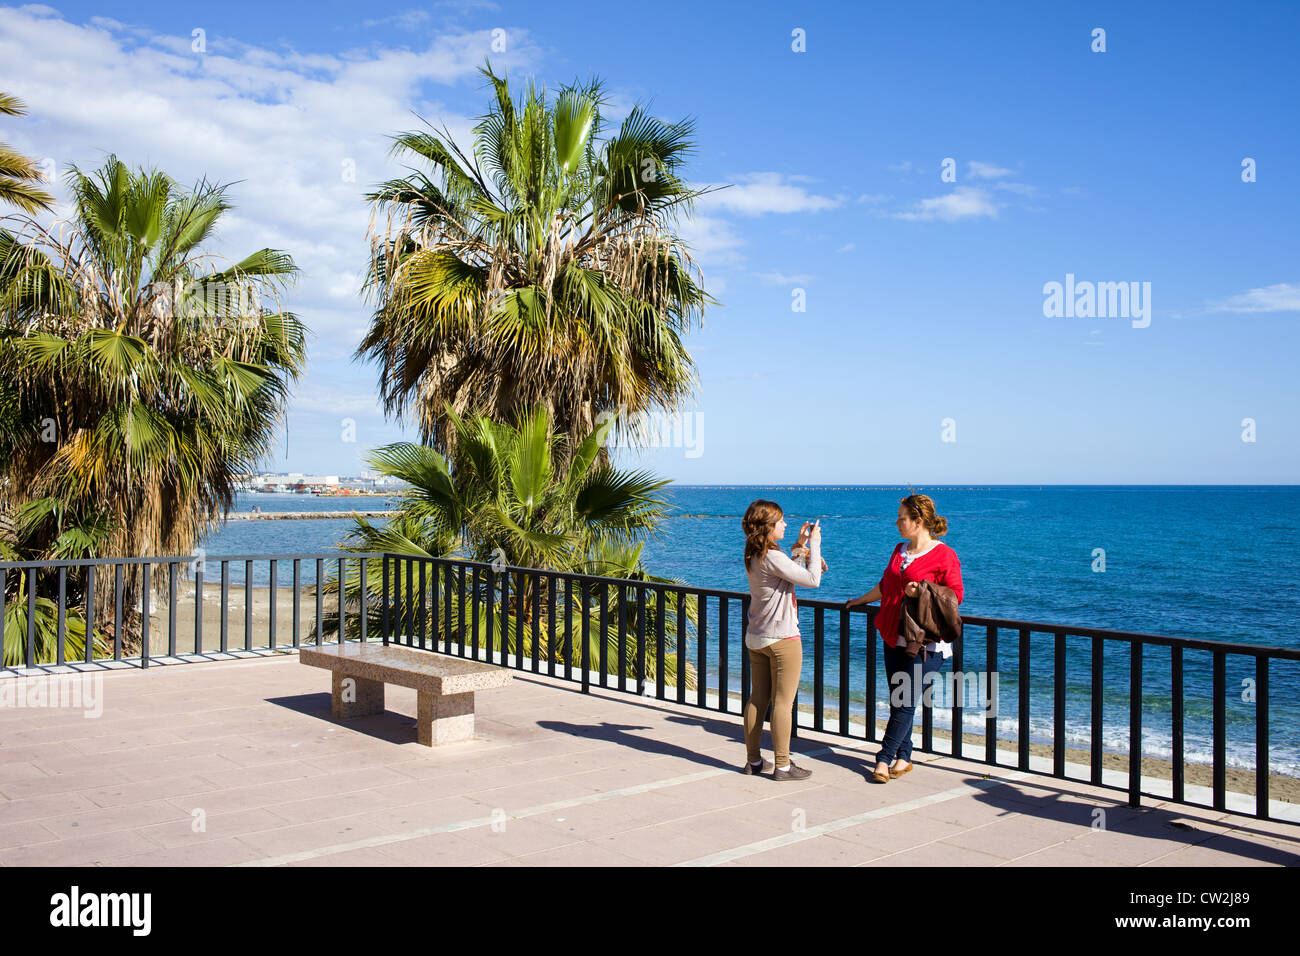 Zwei Frauen fotografieren Speicher auf dem Meer Strandpromenade in Resort Stadt Marbella an der Costa Del Sol in Spanien, Süden Andalusiens. Stockfoto